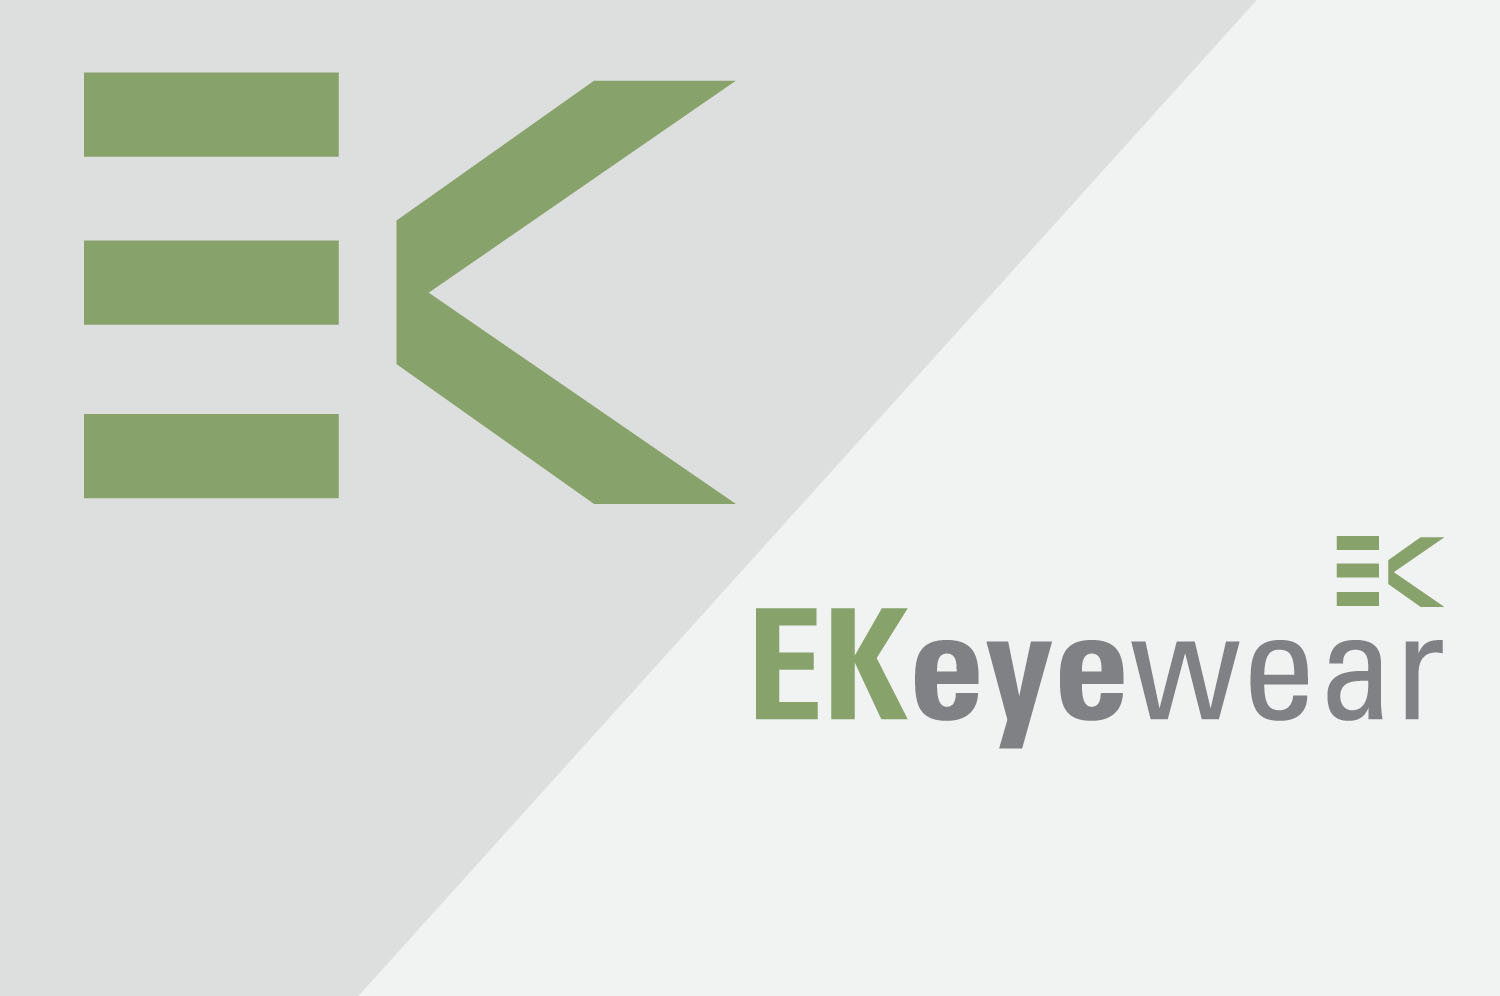  Brand design for EK eyewear, Belfast 